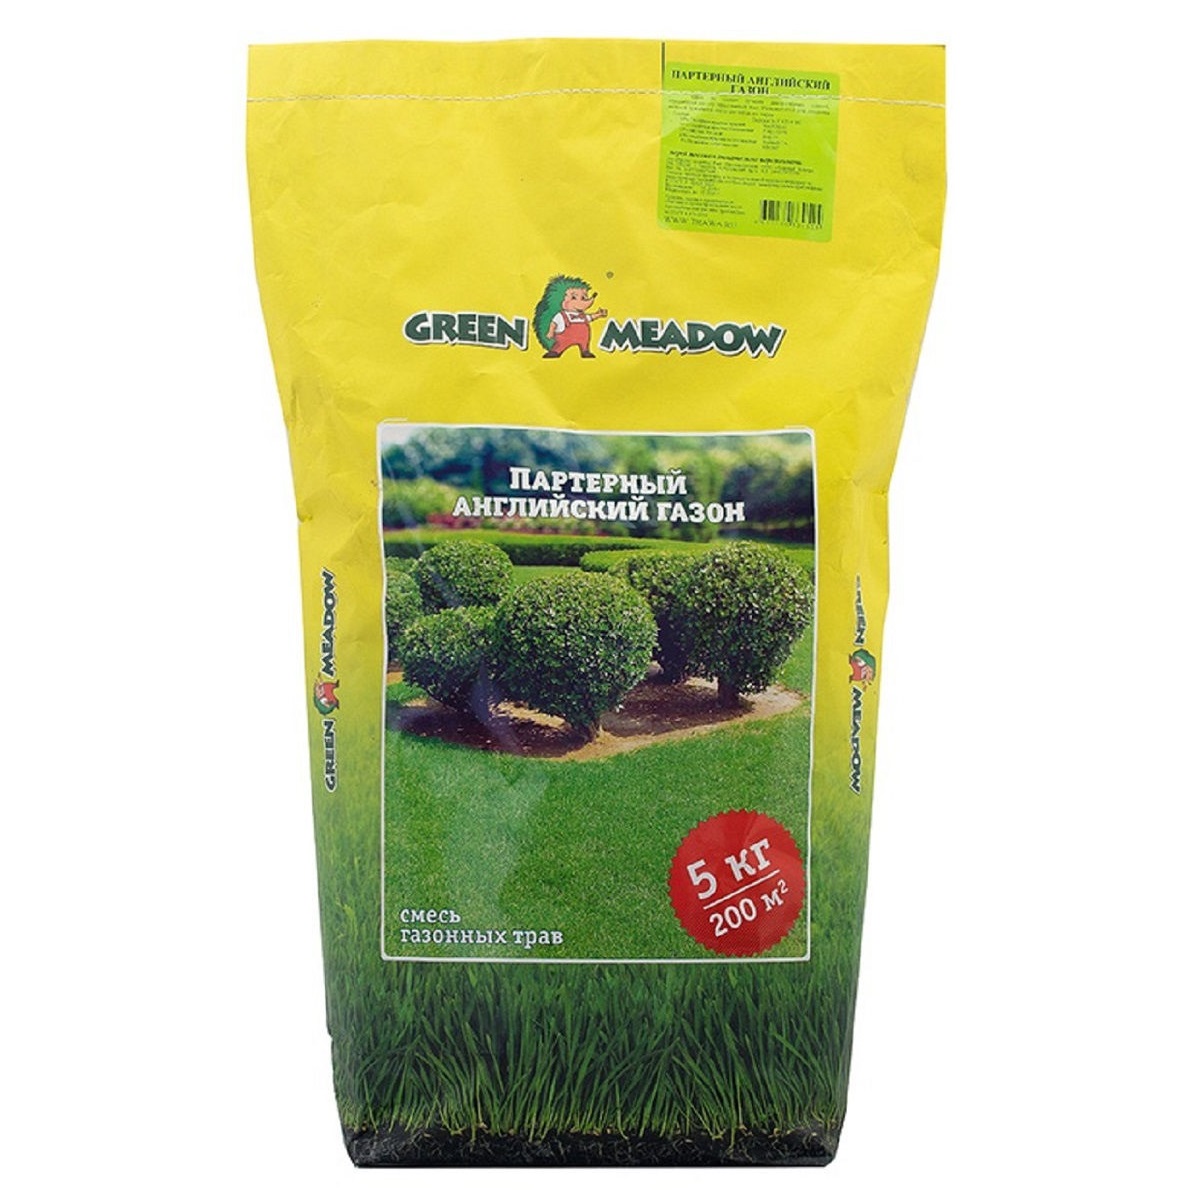 Газон Green Meadow партерный английский 5 кг газон green meadow лилипут для ленивых 0 5 кг